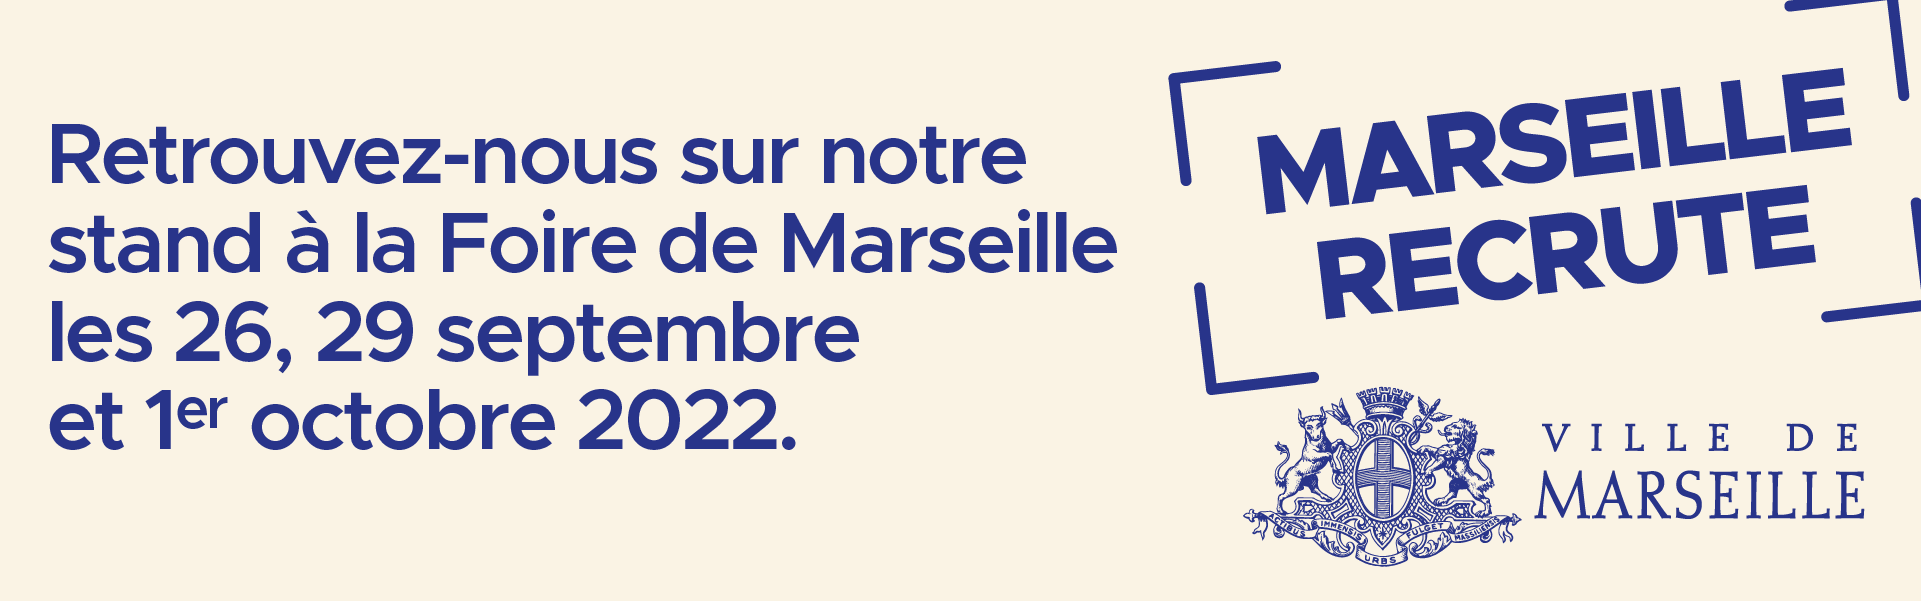 Marseille recrute à la Foire : venez découvrir nos offres d’emploi !